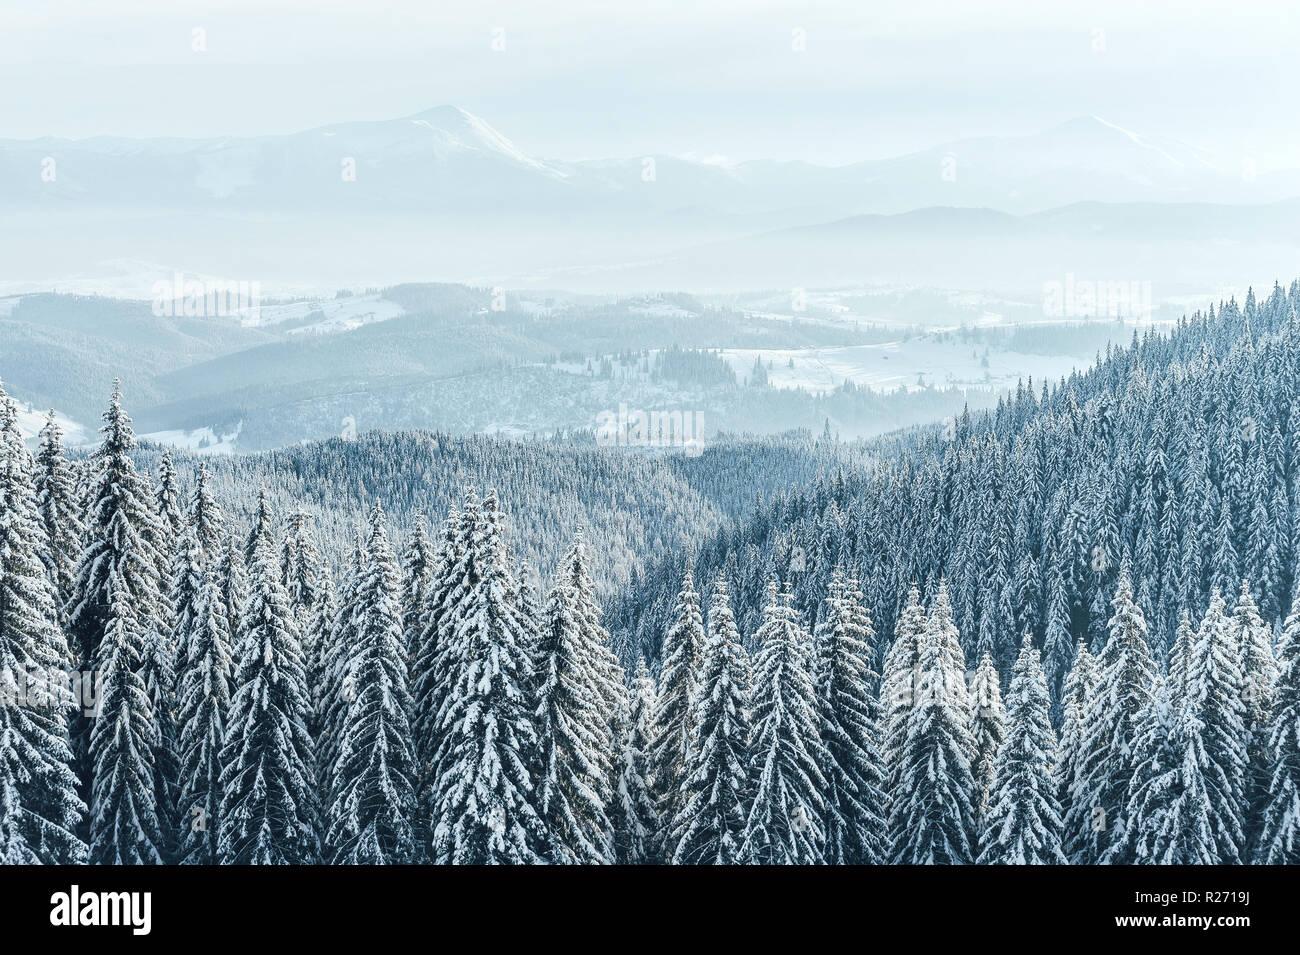 Fond de Noël avec les sapins enneigés et les fortes chutes de neige. Montagnes hiver paysage Banque D'Images